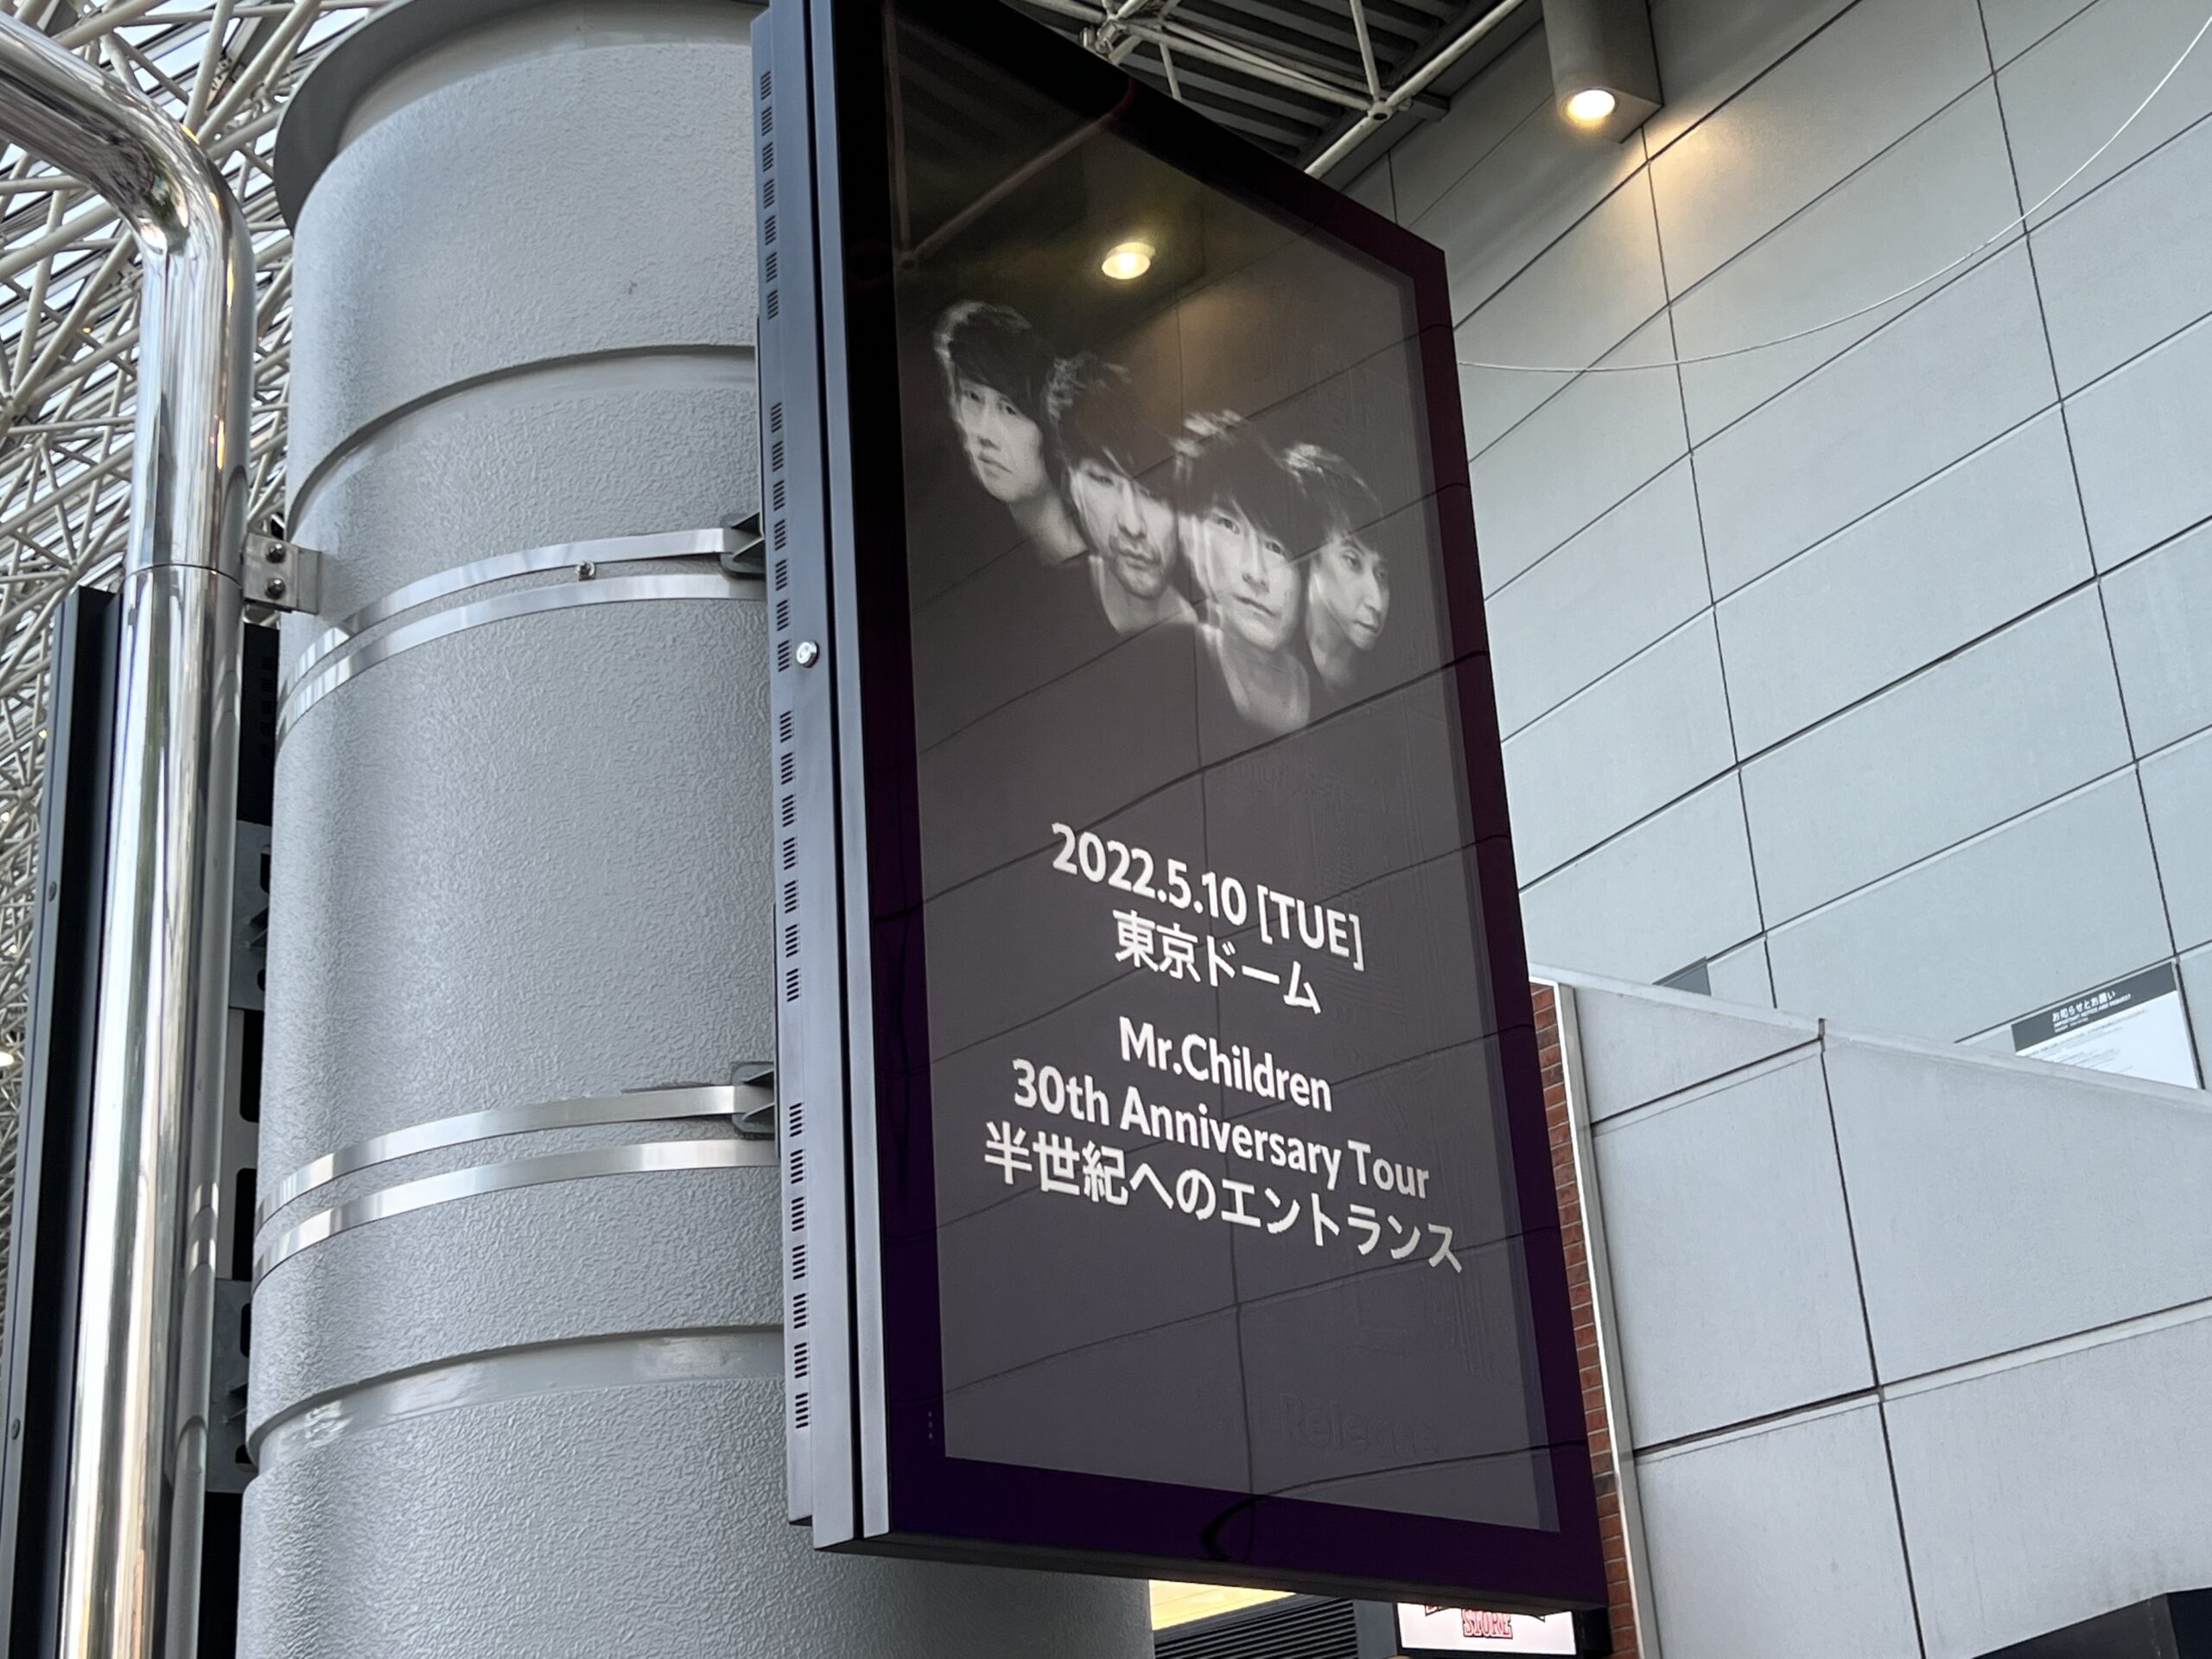 『Mr.Children 30th Anniversary Tour 半世紀へのエントランス』の東京ドームのサイネージ画面